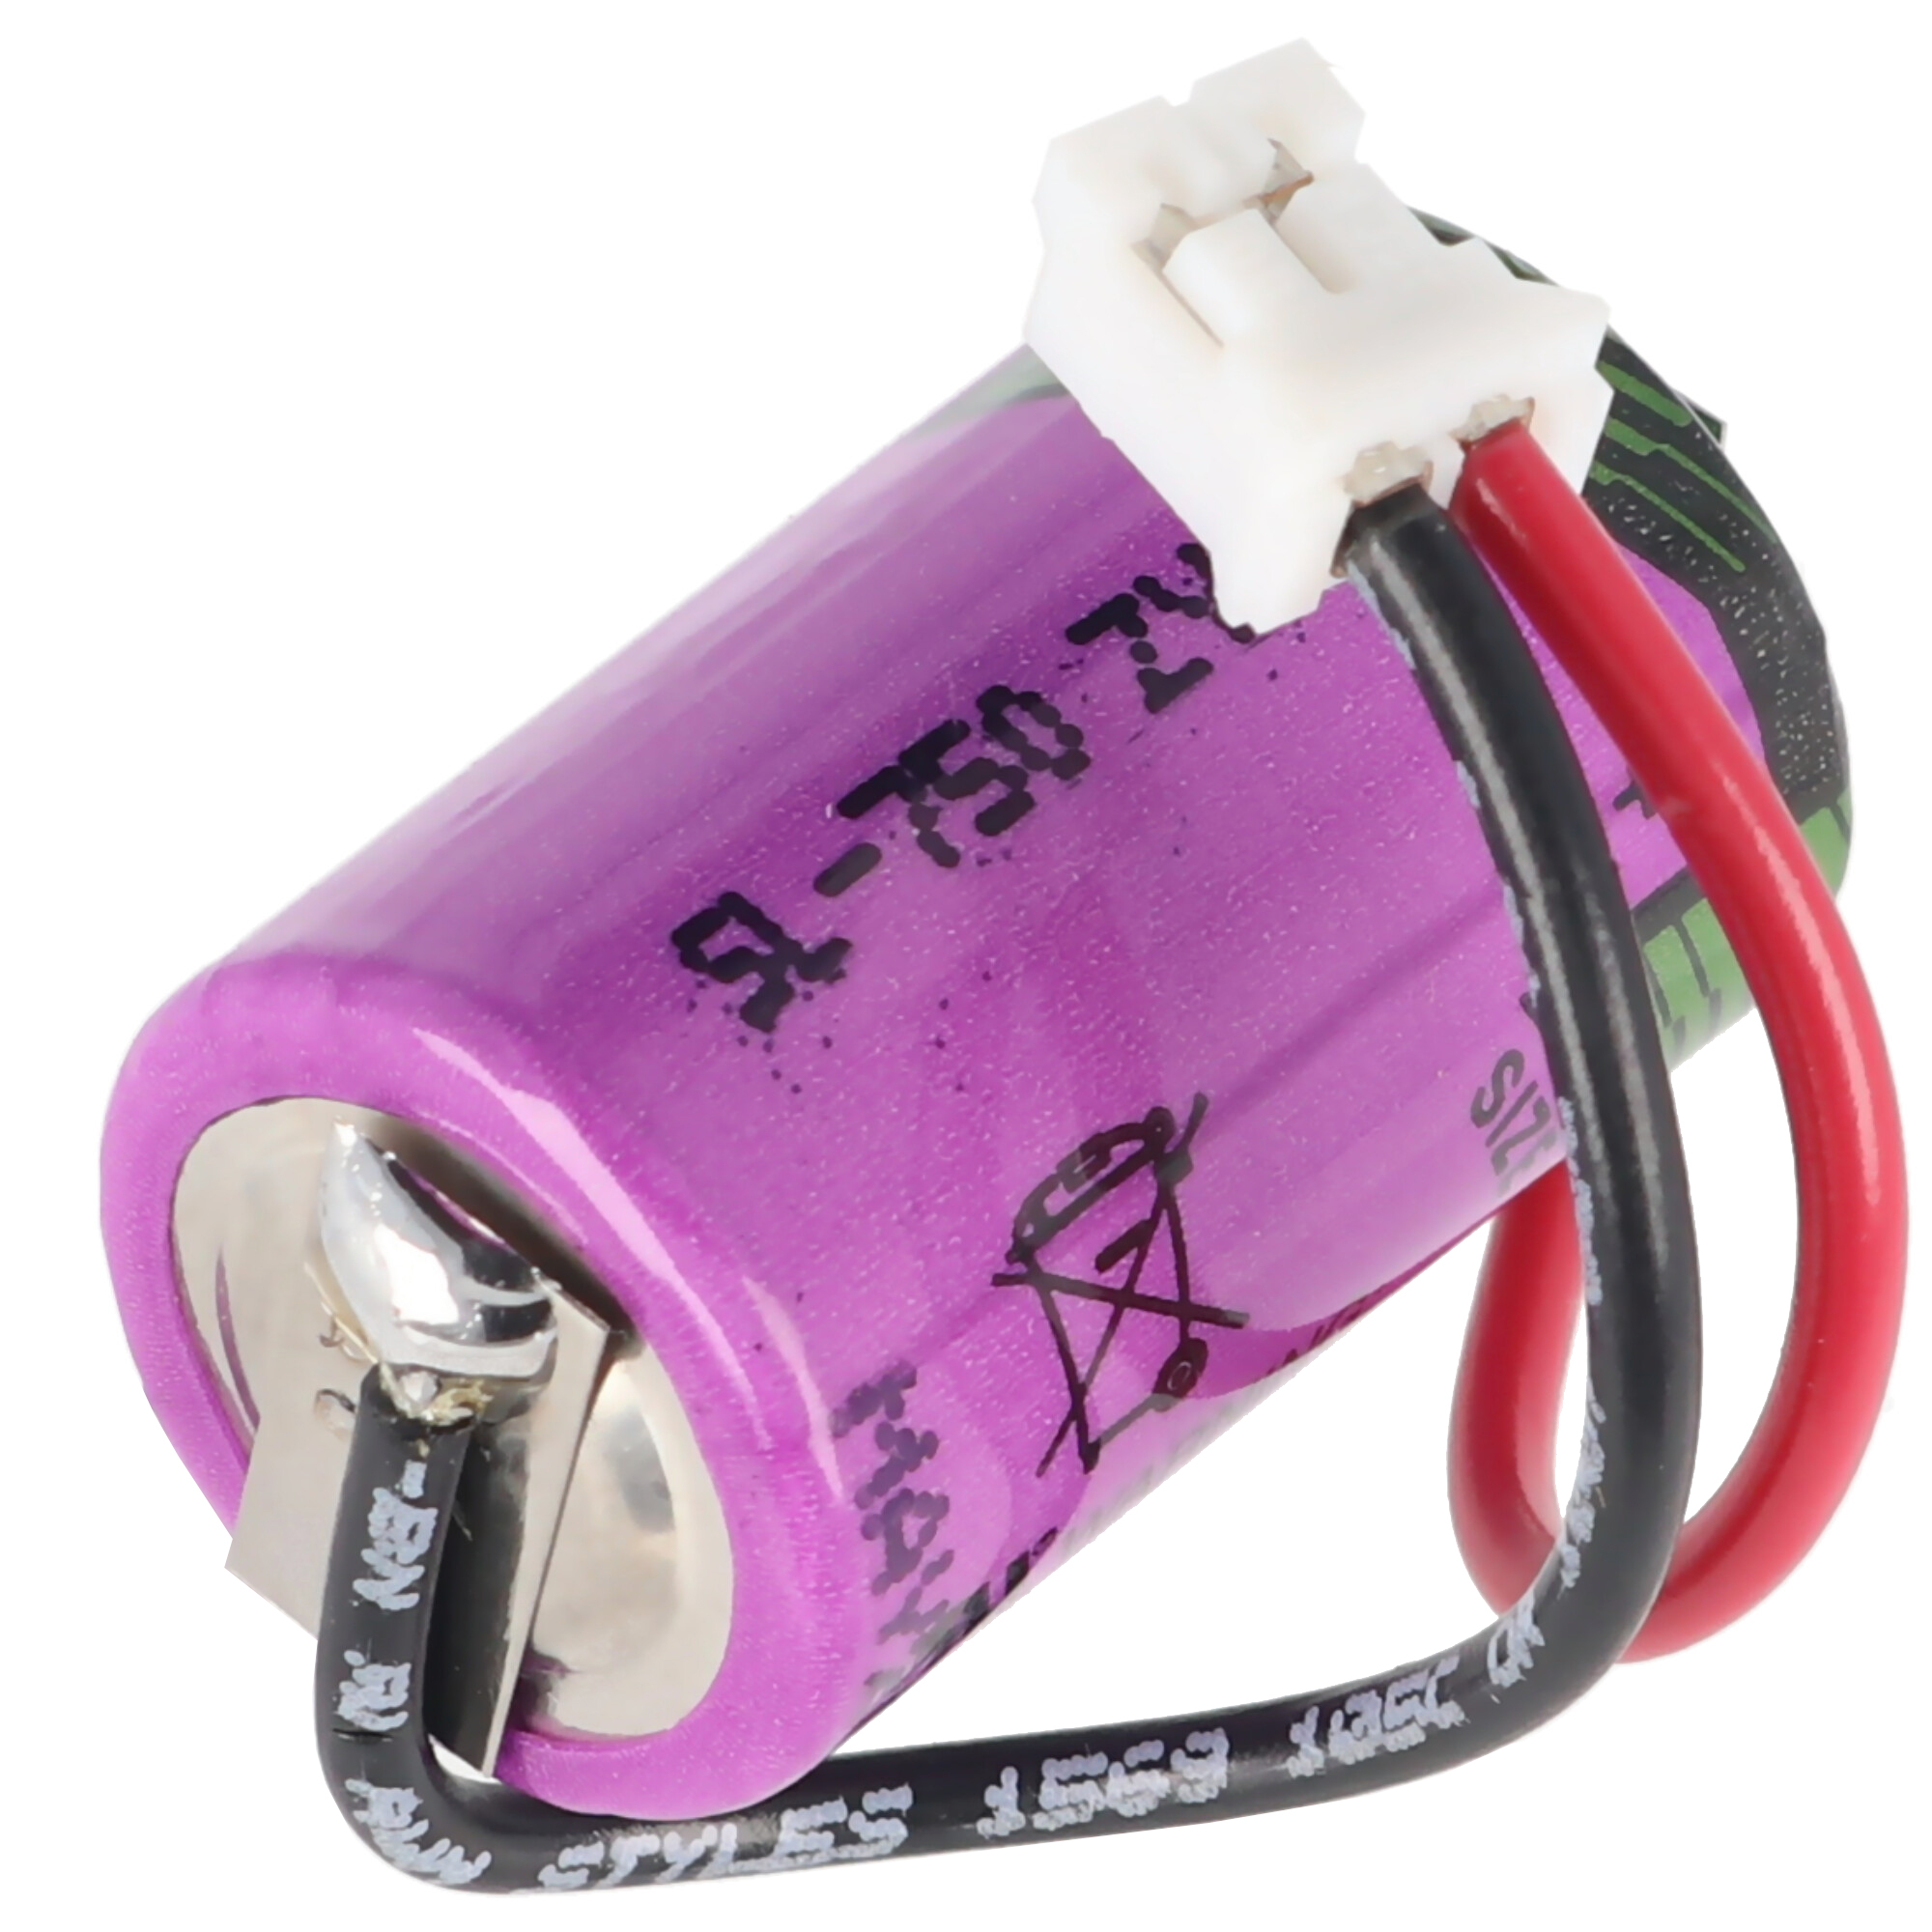 Ersatzbatterie passend für die Testo Datenlogger 175-T3, 175-H1, 175-H2, 175-S1, 175-S2 Batterie, 1/2AA 3,6 Volt mit Kabel und Stecker